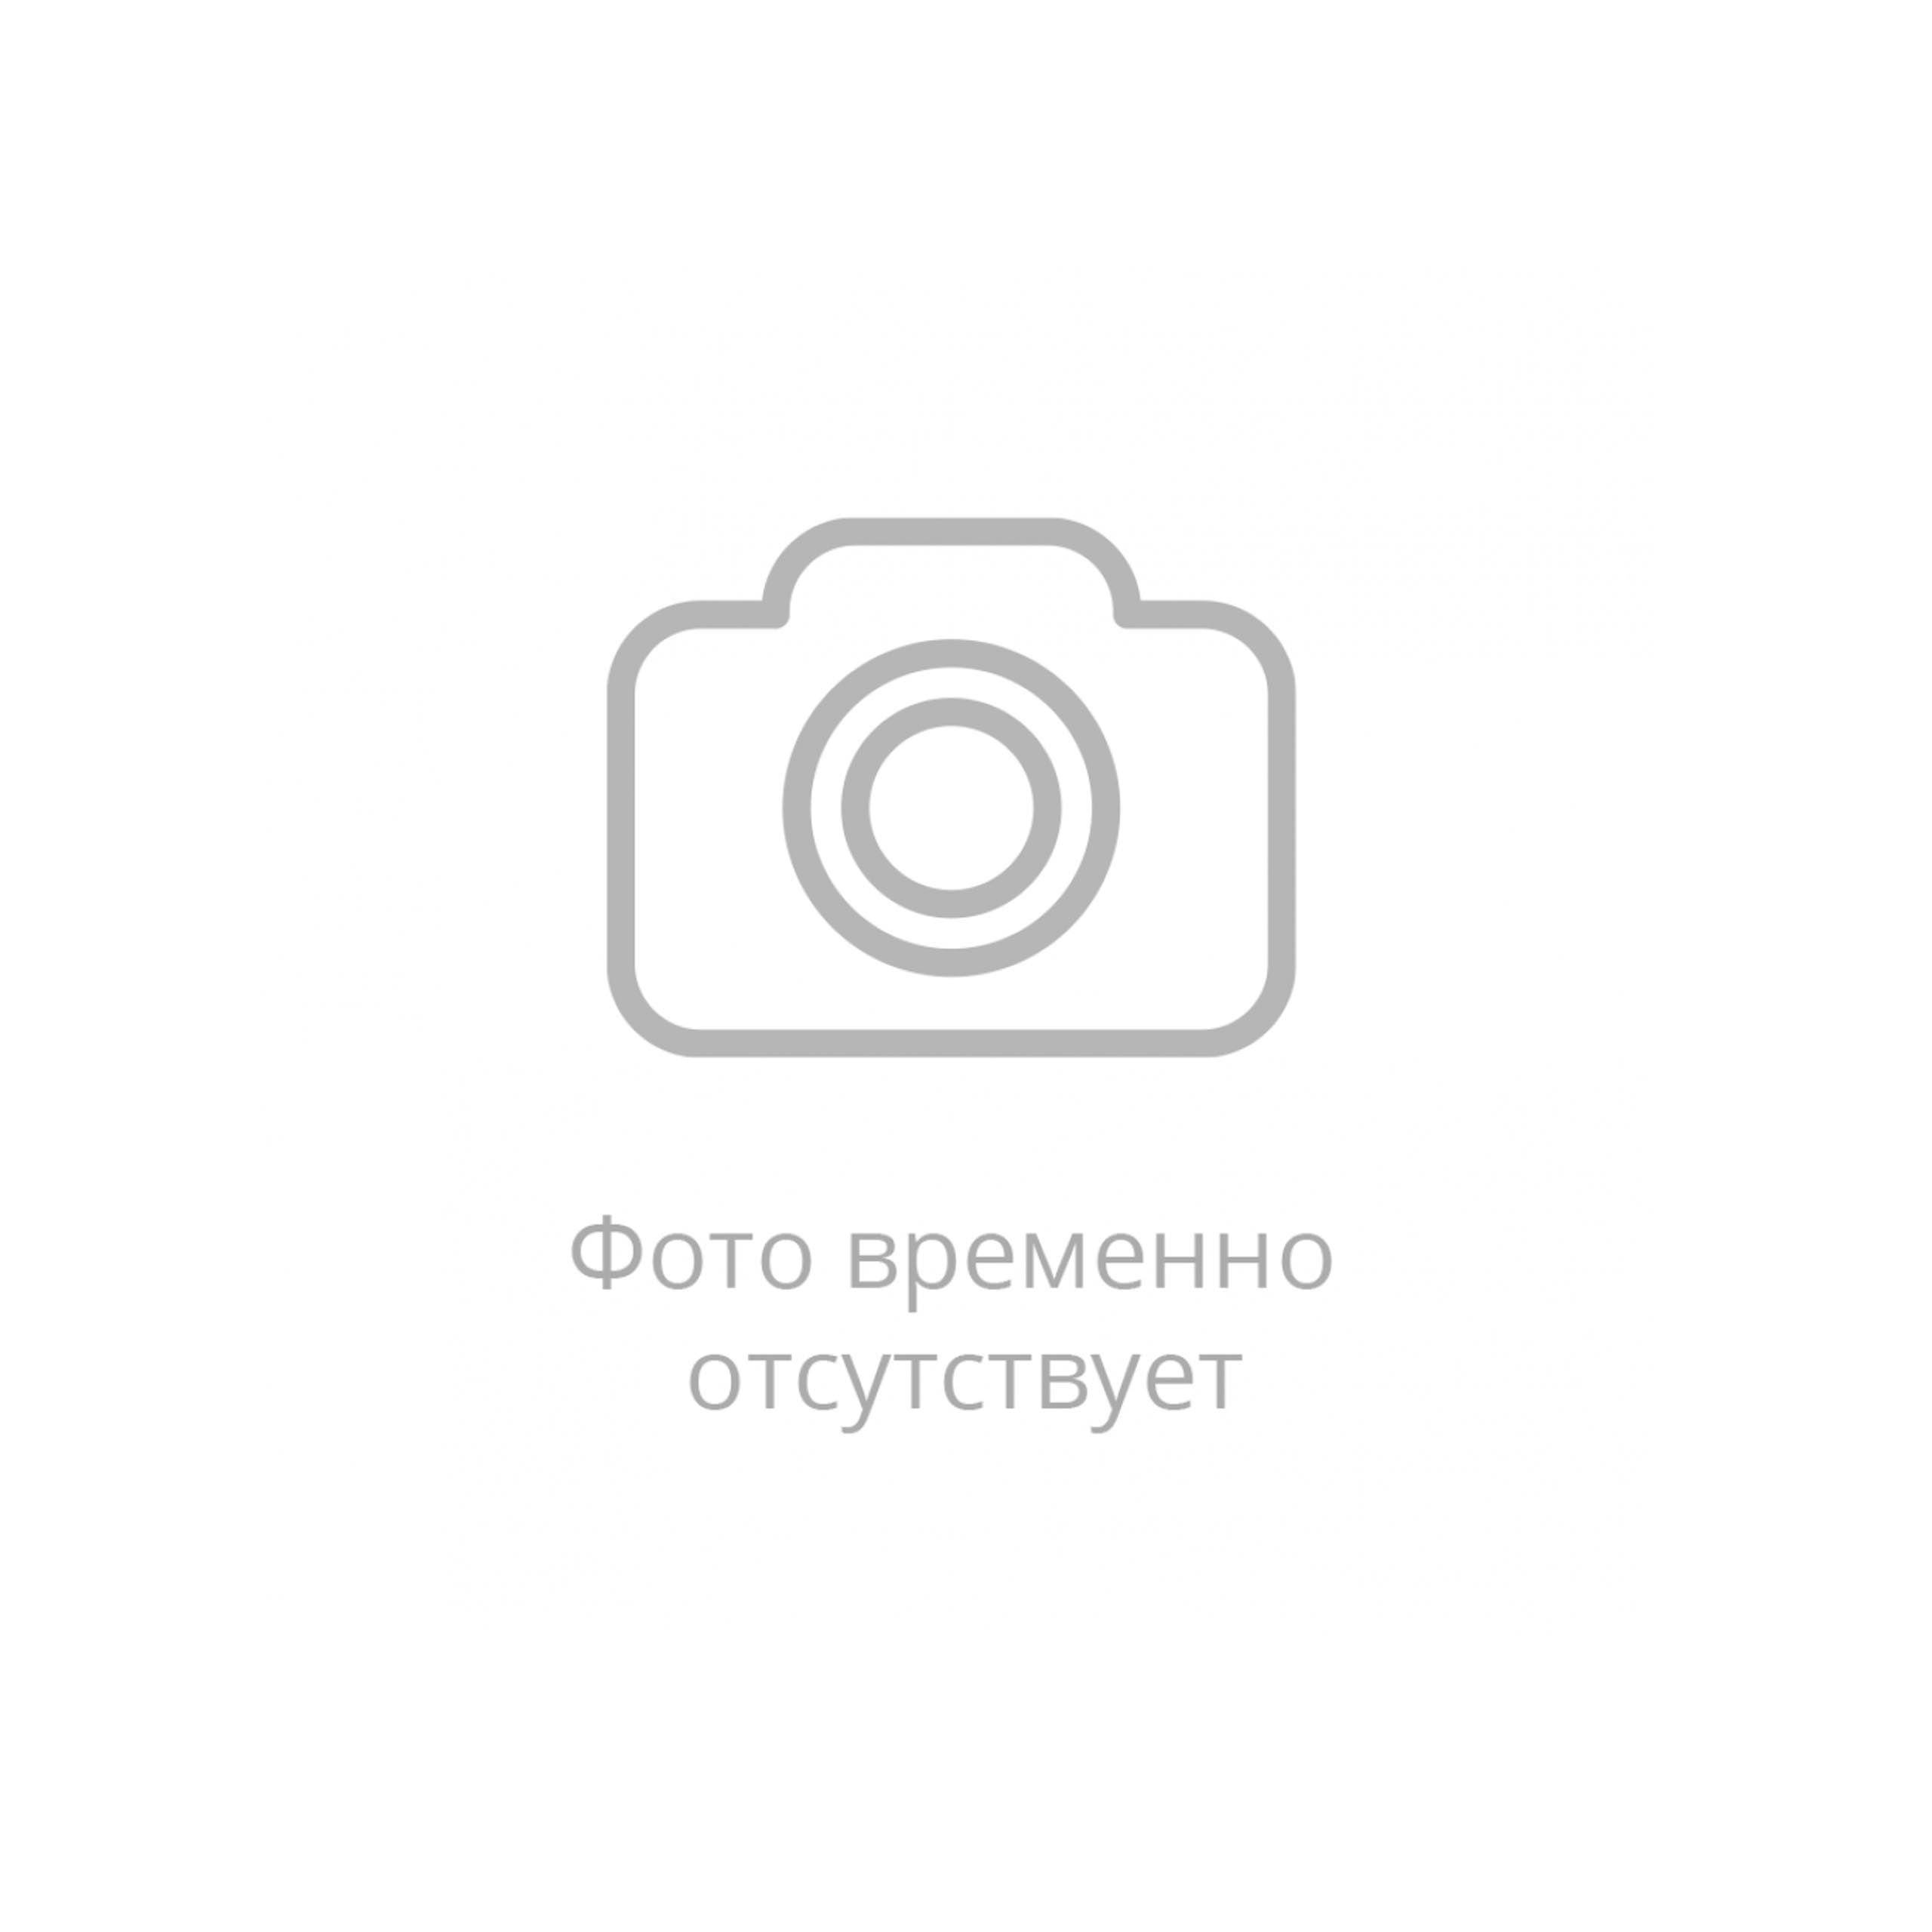 Патрубок силиконовый демпфер Ф 100 мм L 100 мм Санкт-Петербург